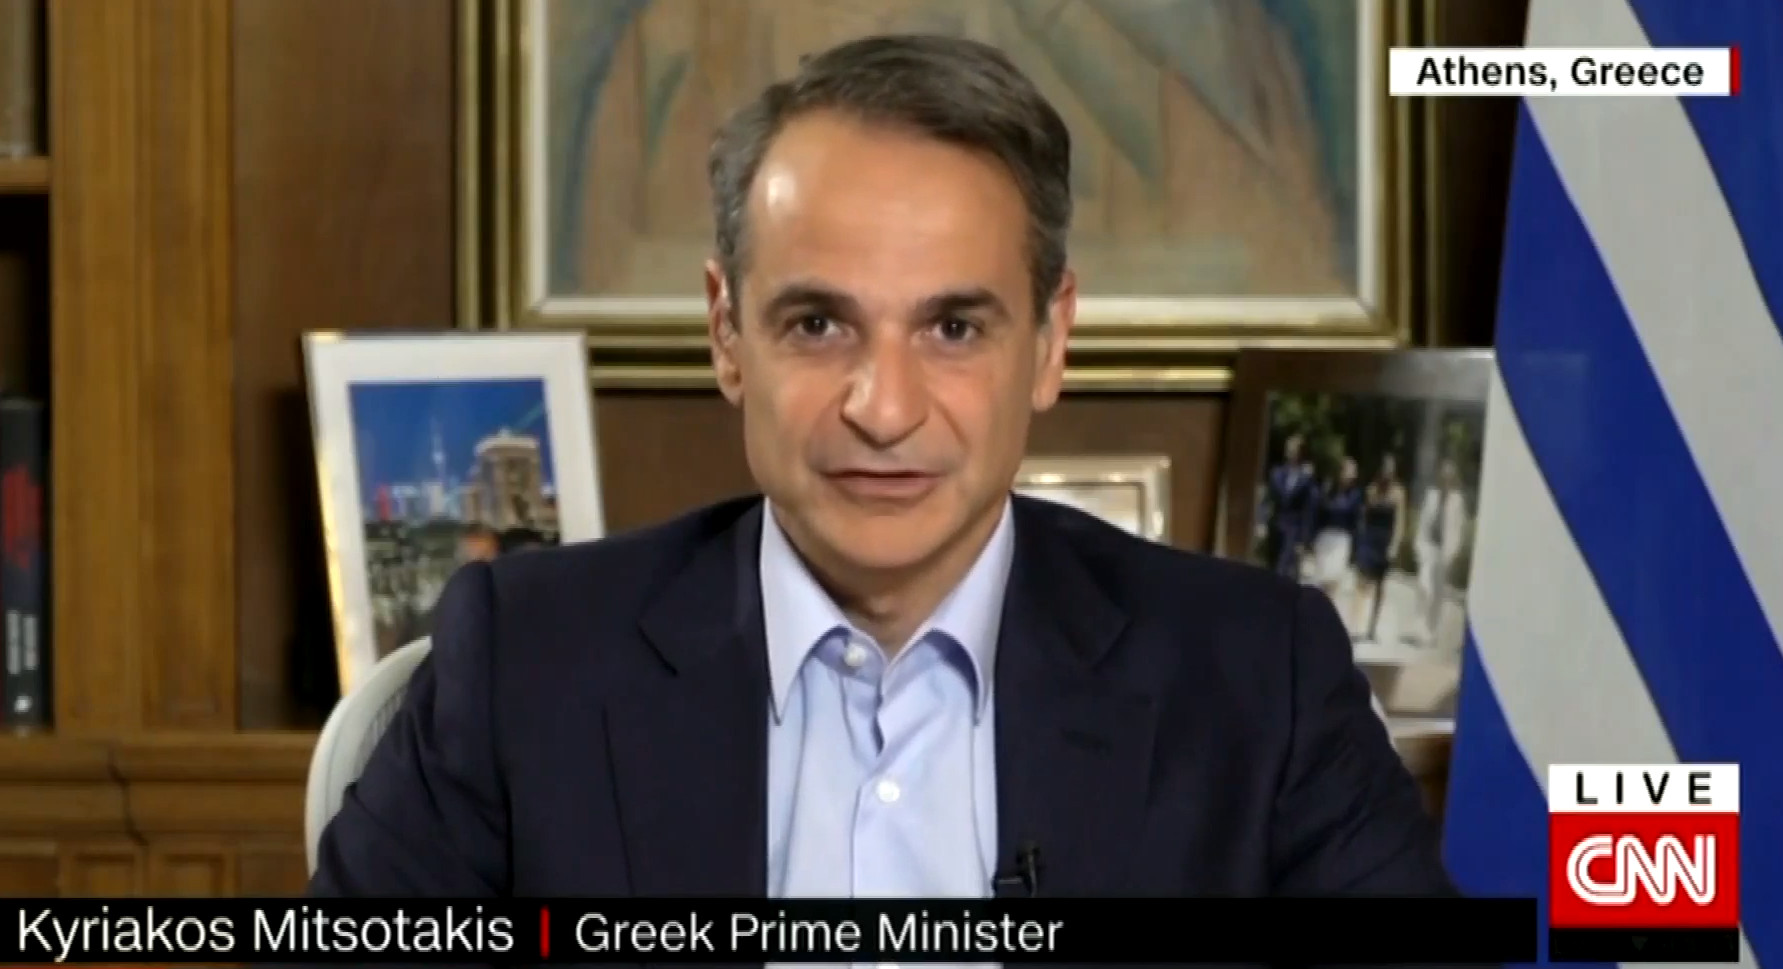 Μητσοτάκης σε CNN: Νικήσαμε τον λαϊκισμό κατά 20 μονάδες - Ο ελληνικός λαός μάς επιβράβευσε